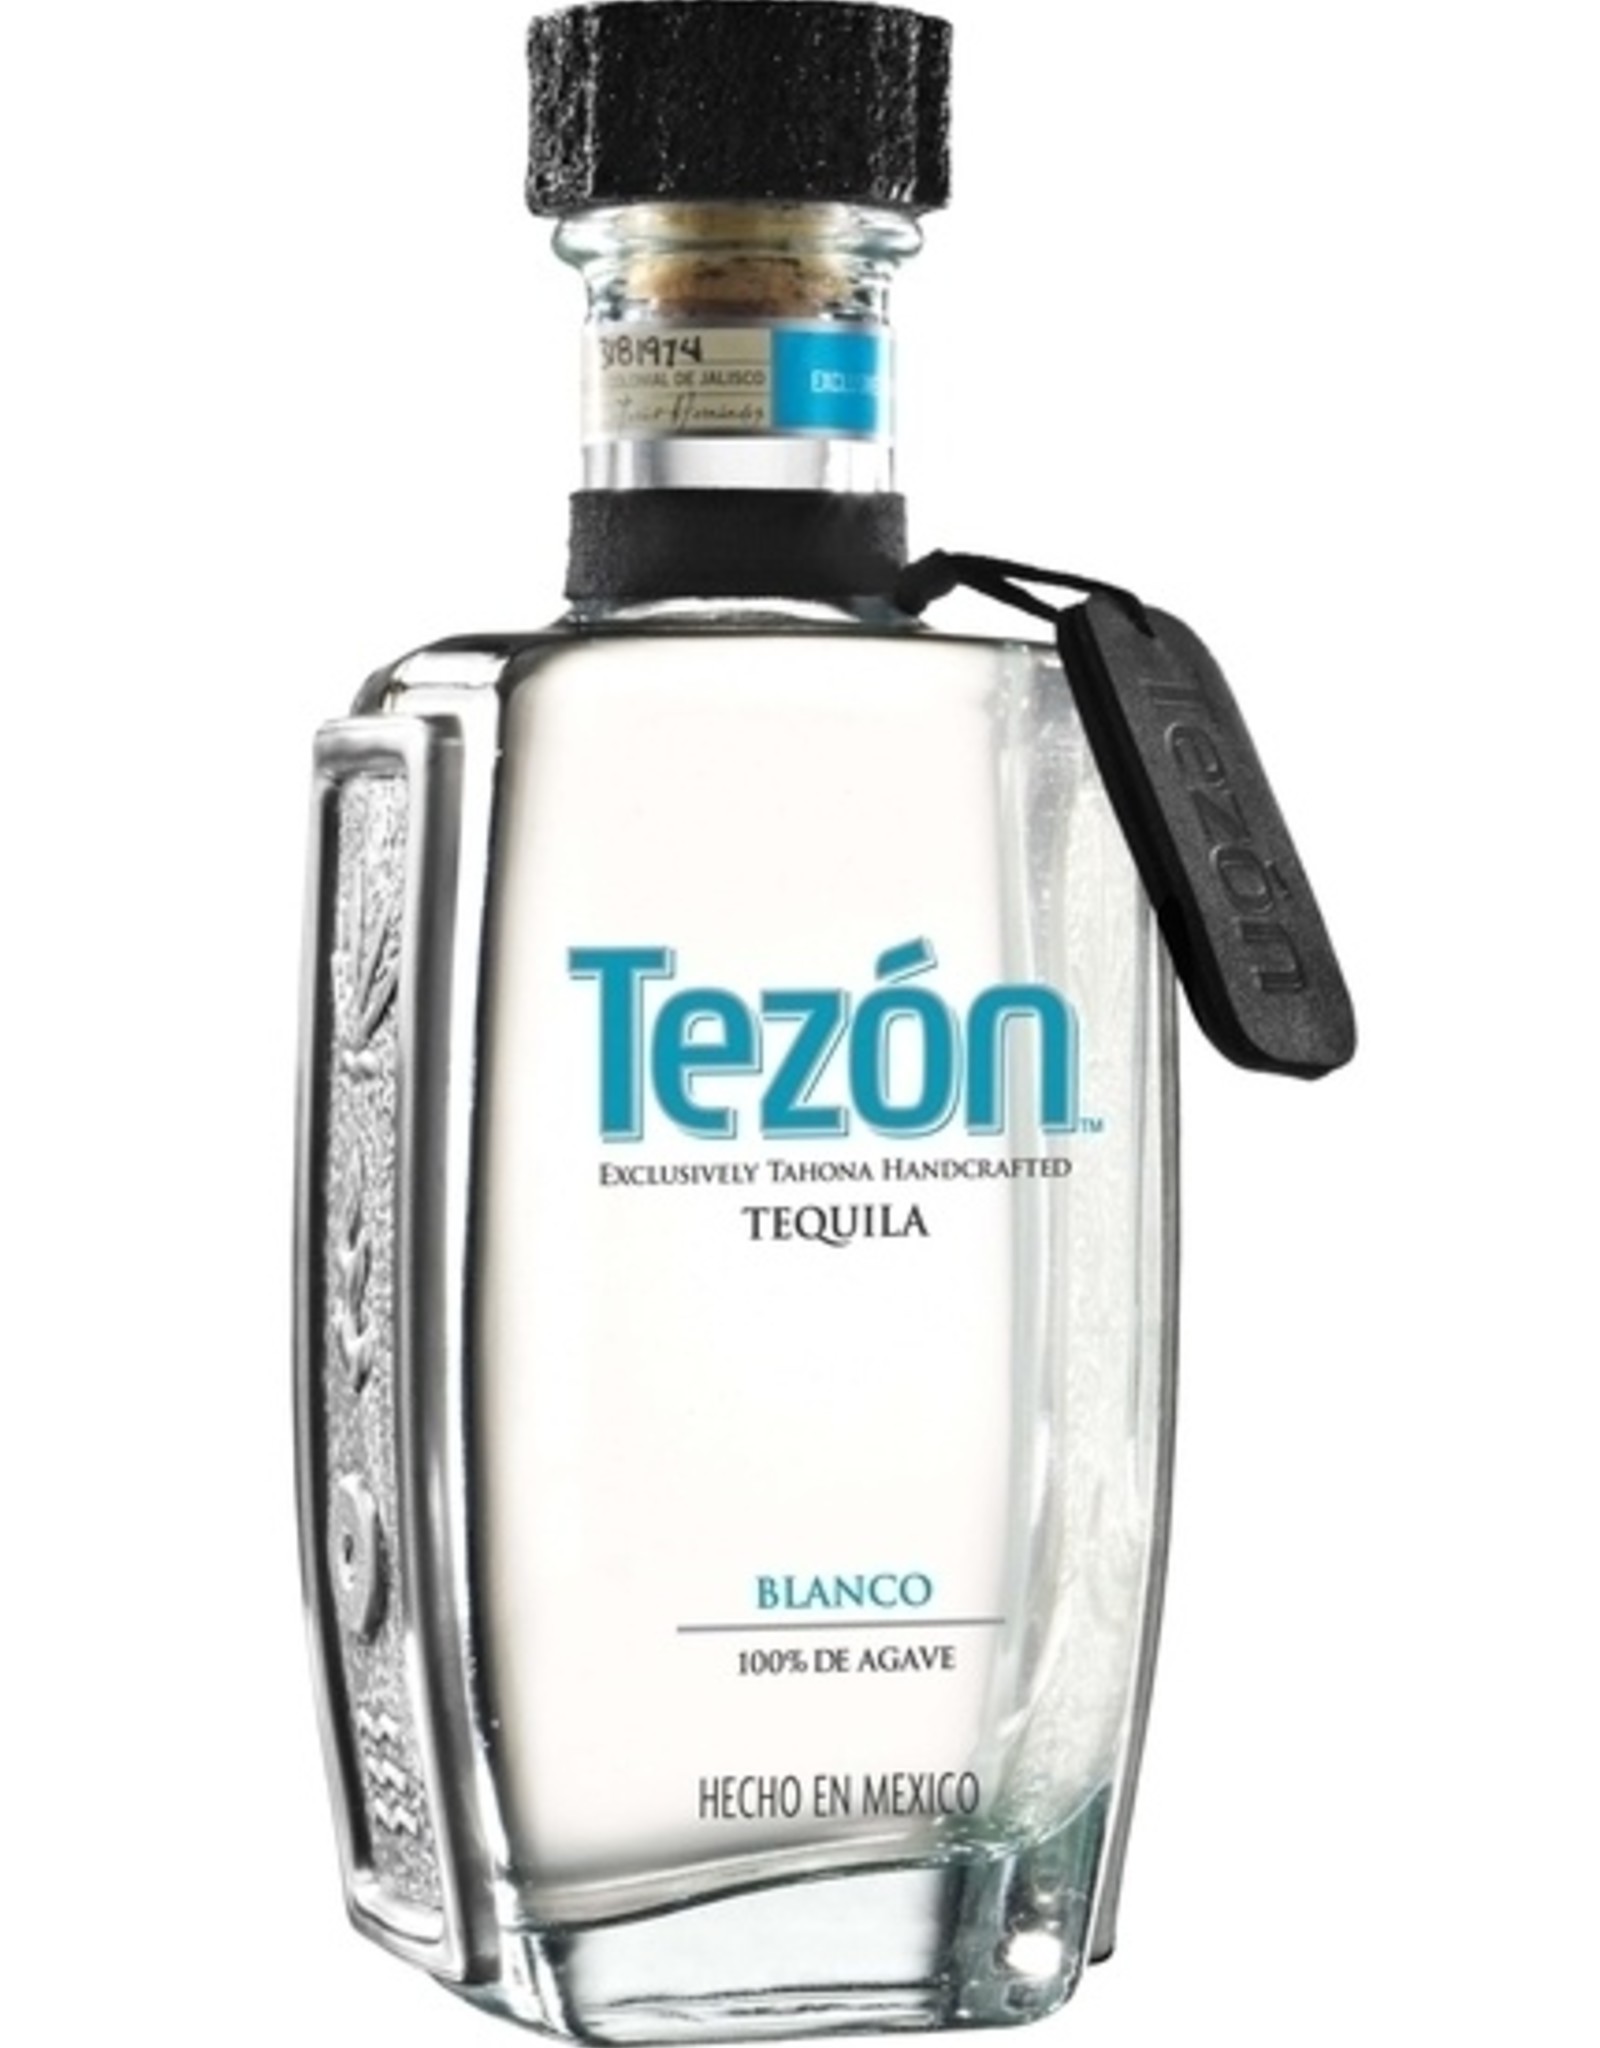 Olmeca Tezon Tequila